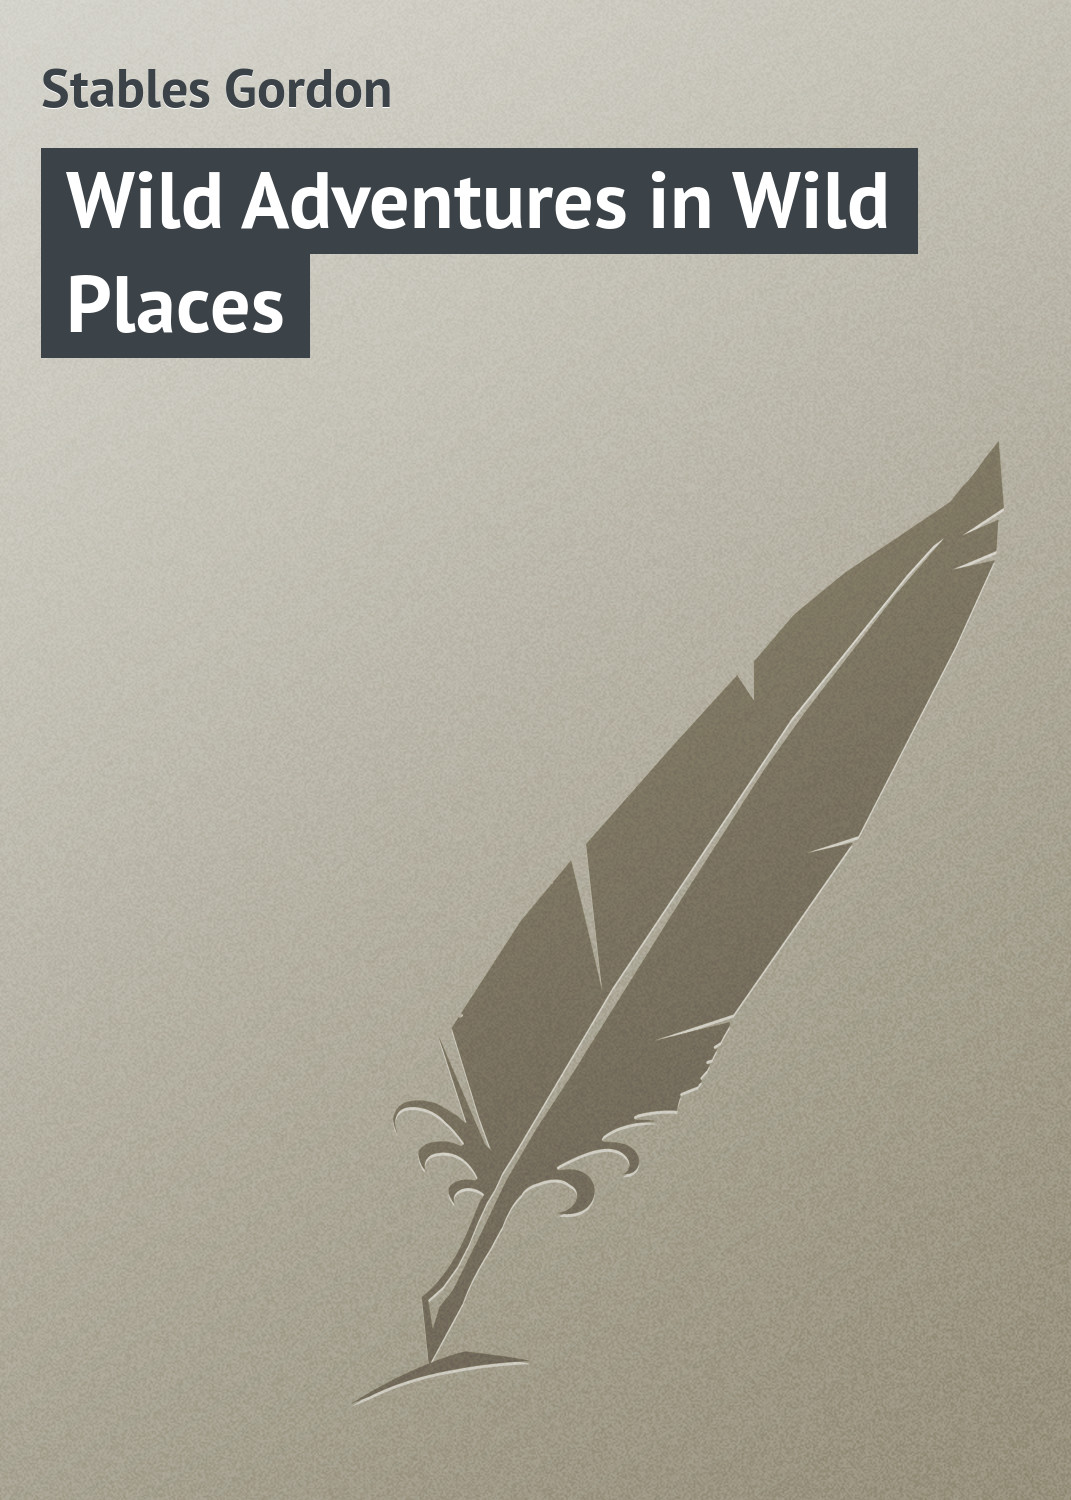 Книга Wild Adventures in Wild Places из серии , созданная Gordon Stables, может относится к жанру Природа и животные, Зарубежная классика, Зарубежные детские книги. Стоимость книги Wild Adventures in Wild Places  с идентификатором 23171019 составляет 5.99 руб.